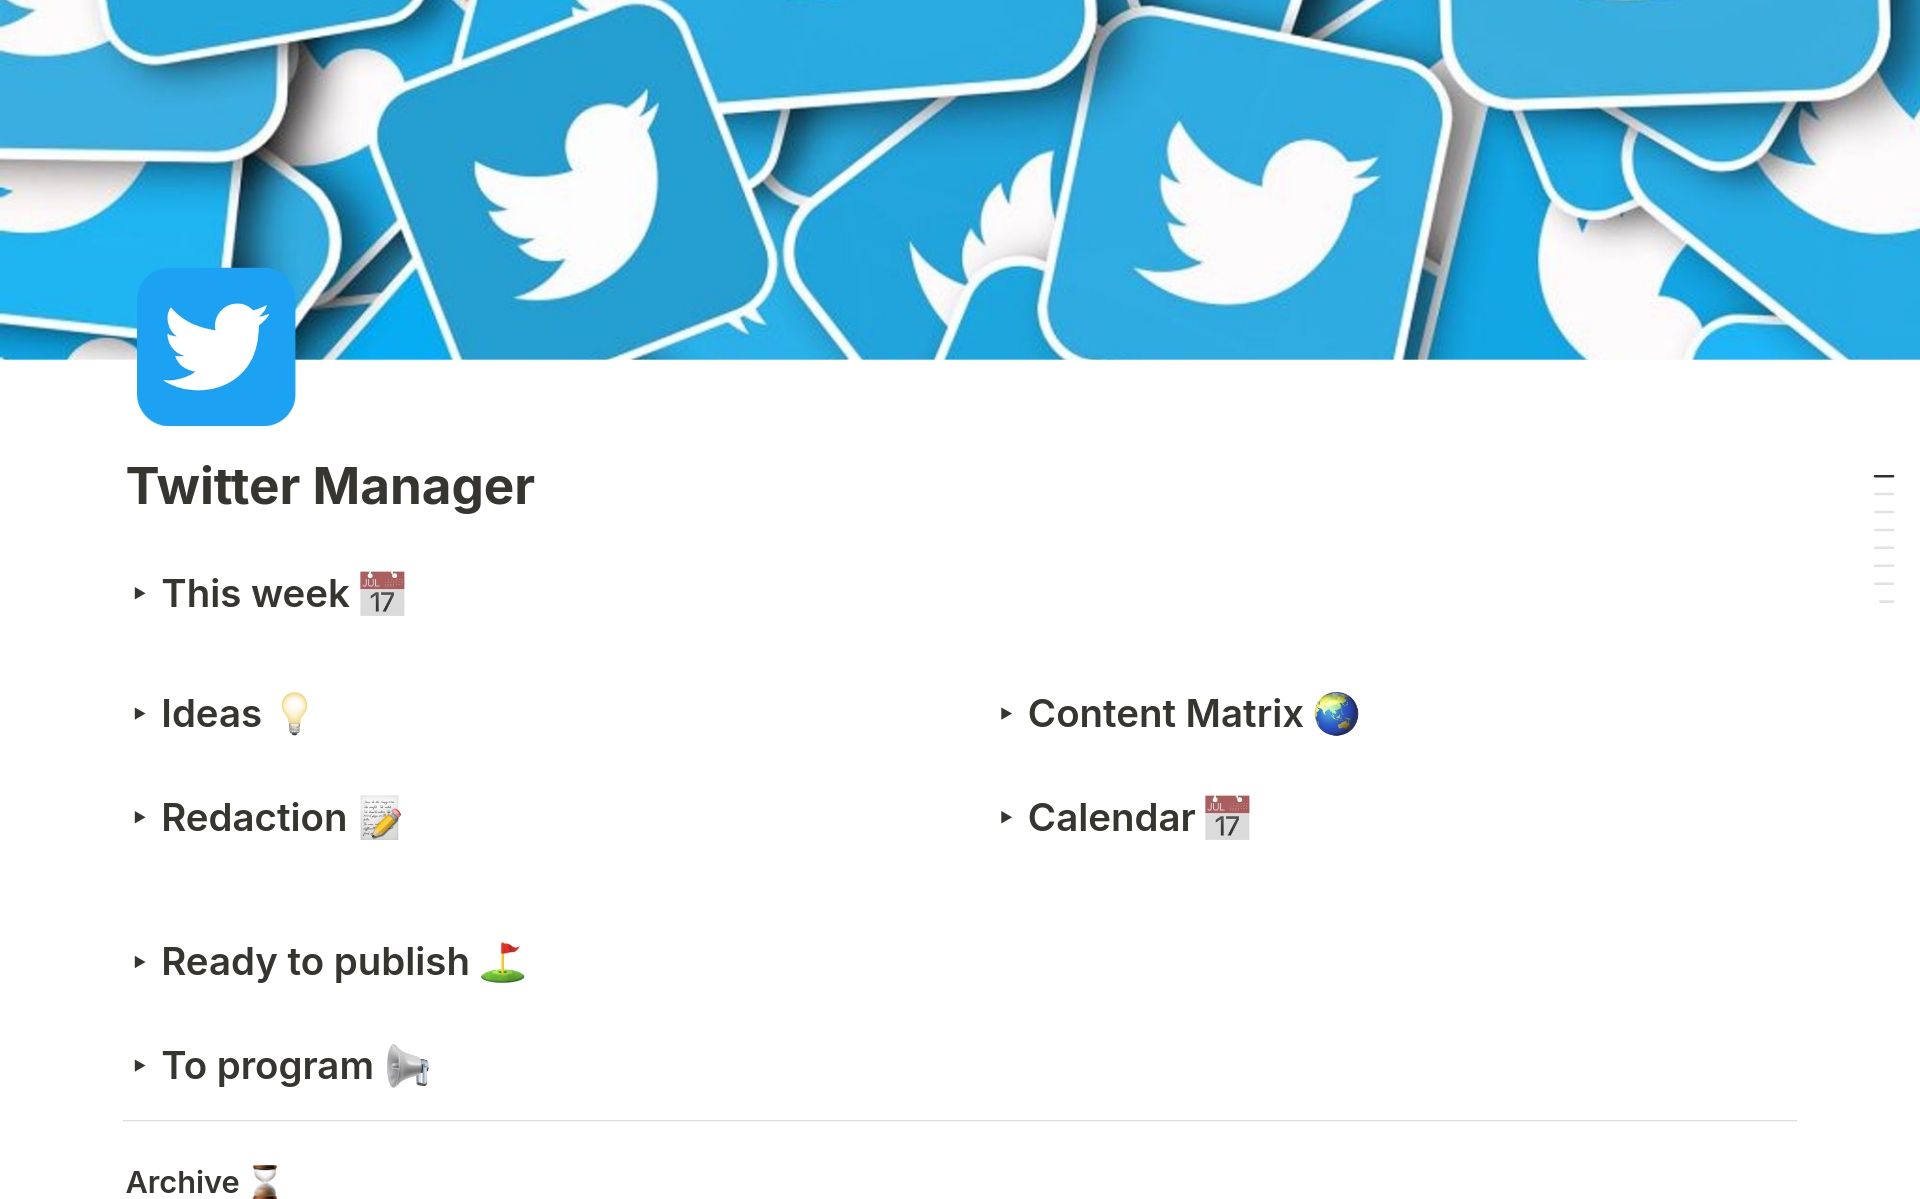 Vista previa de una plantilla para Twitter Manager